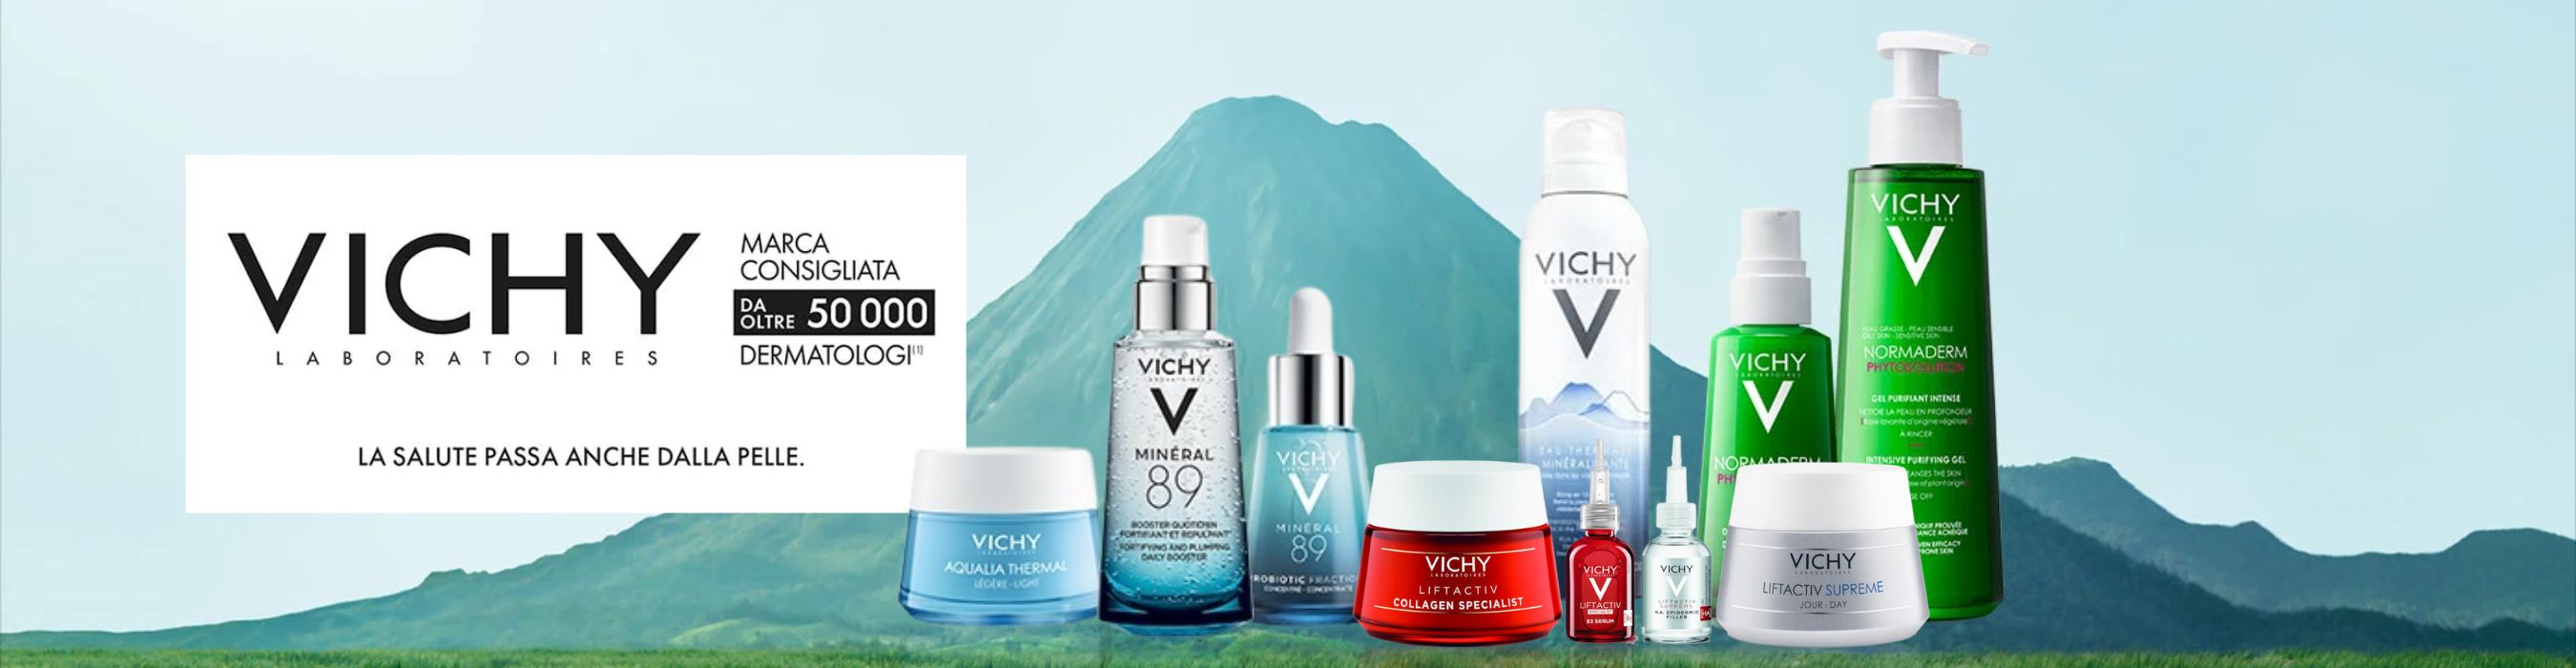 Vichy la salute passa anche dalla pelle